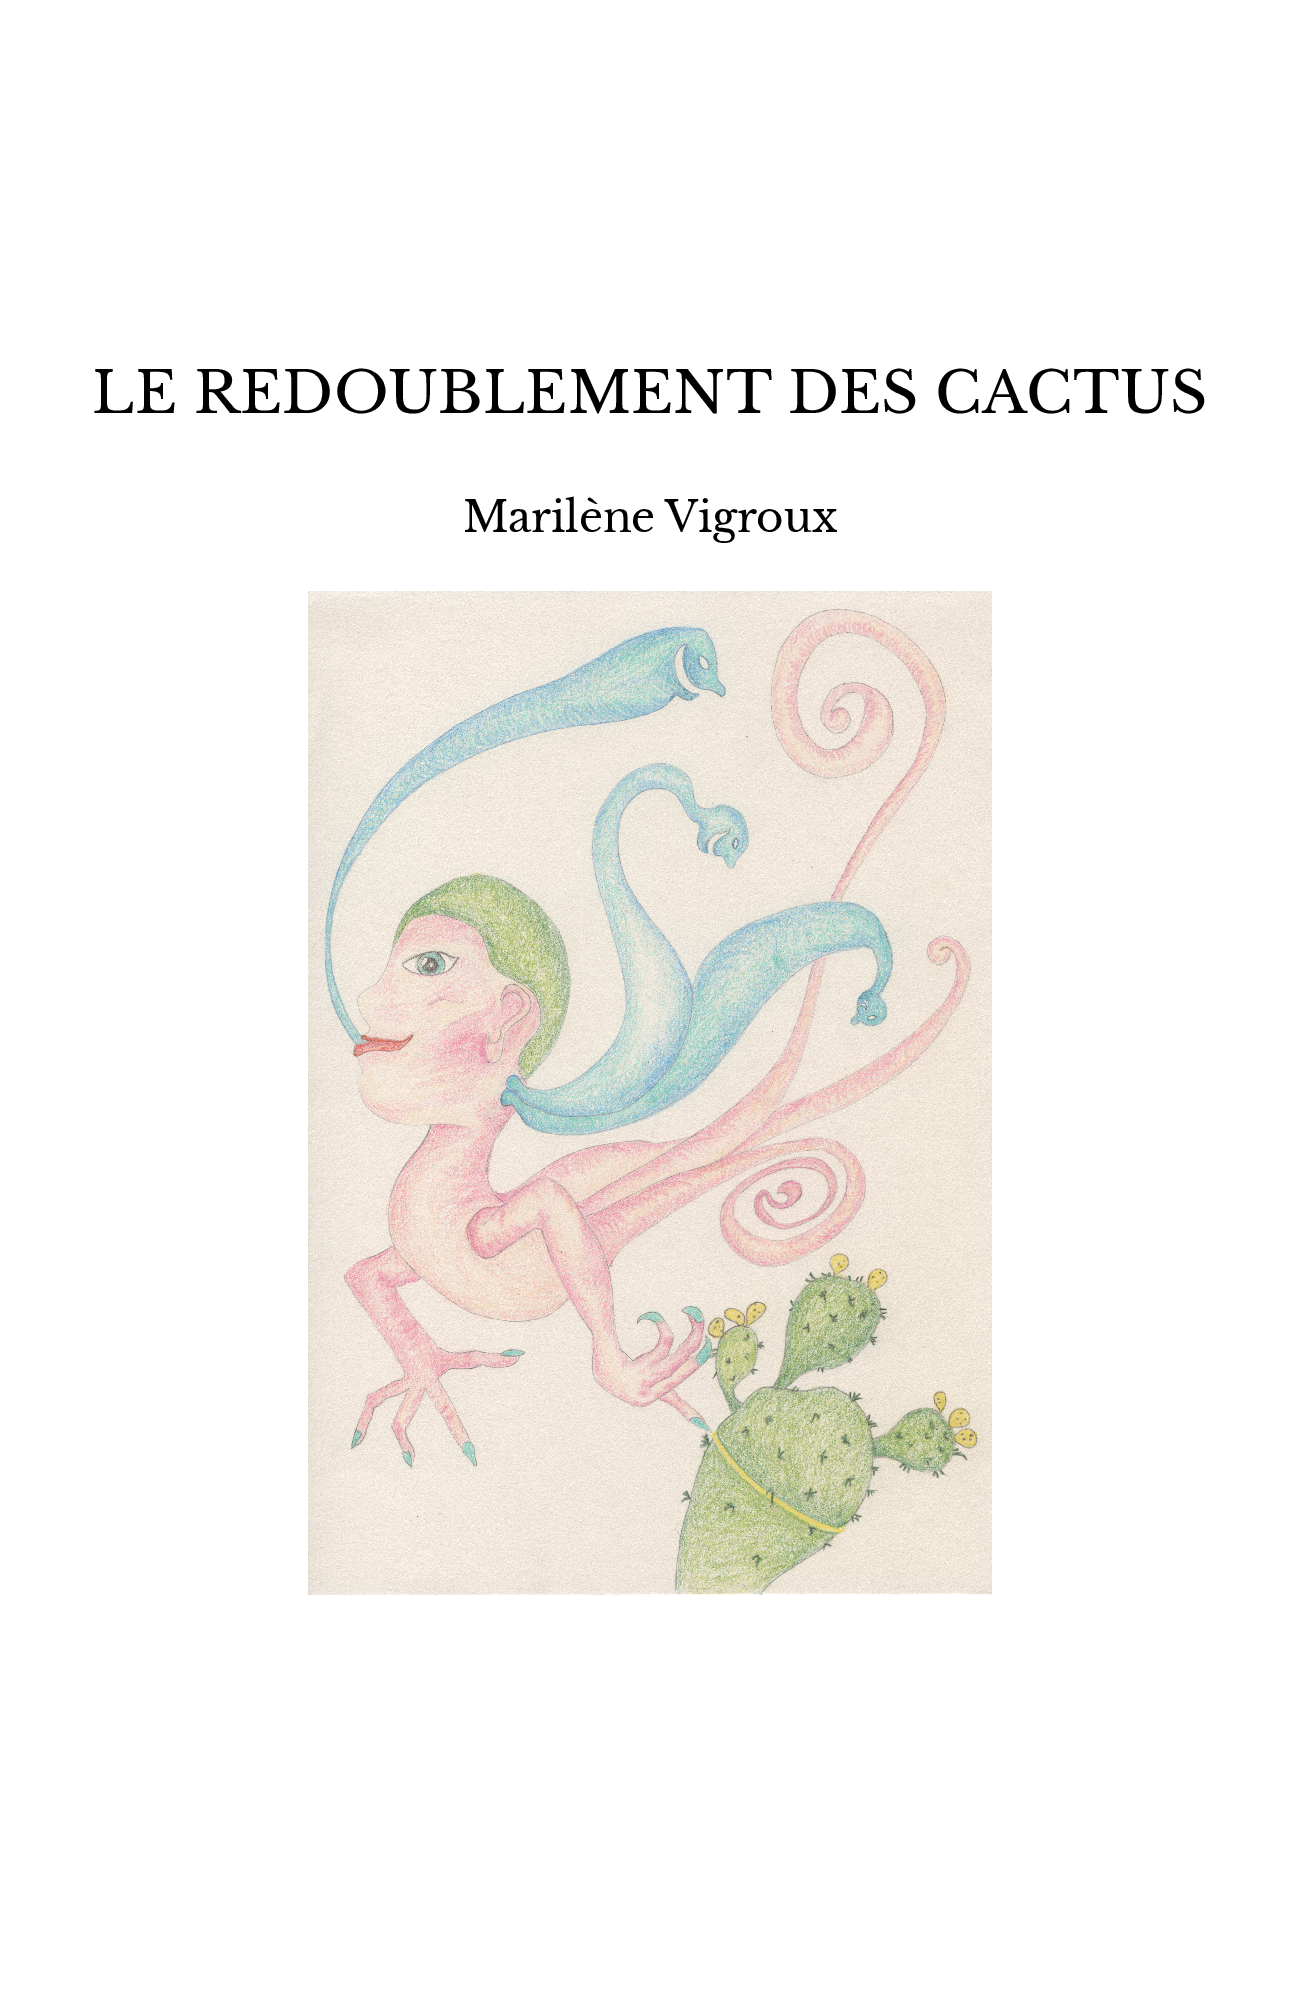 LE REDOUBLEMENT DES CACTUS